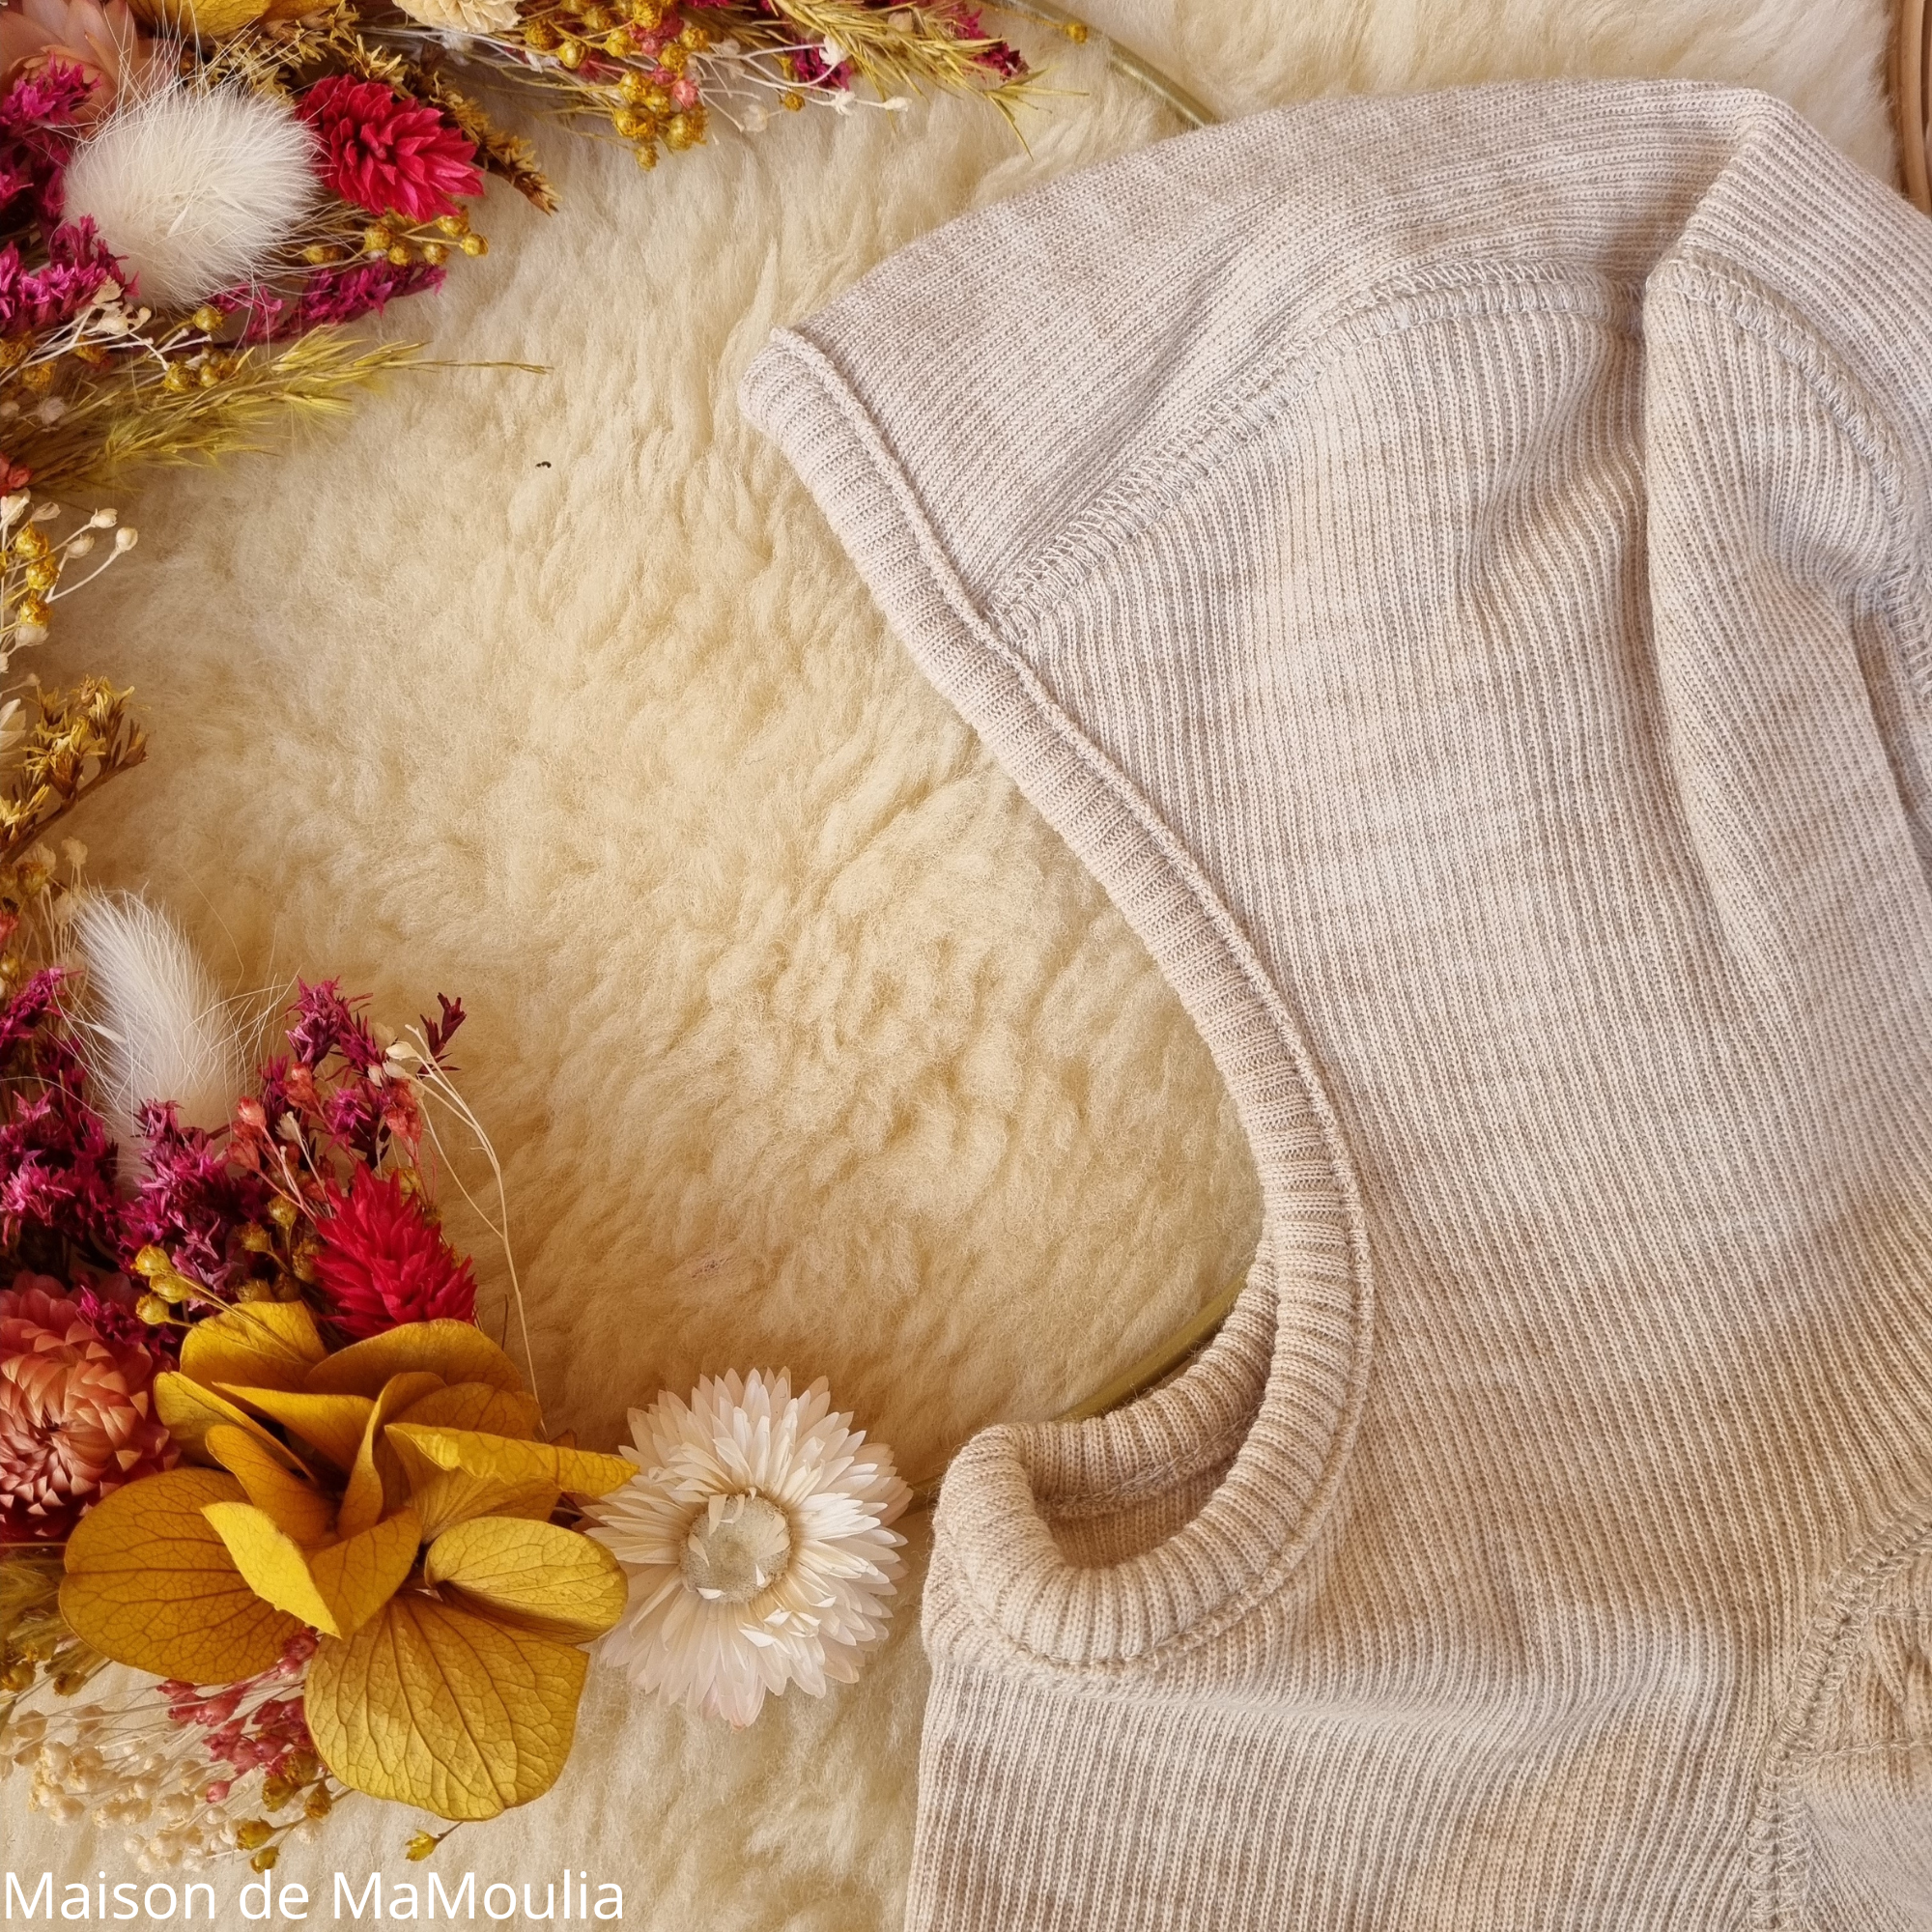 Cagoule pour bébé en laine mérinos avec pompon de fourrure, chauffe-tête et  cou tricotés à la main, vêtements de bébé tricotés -  France